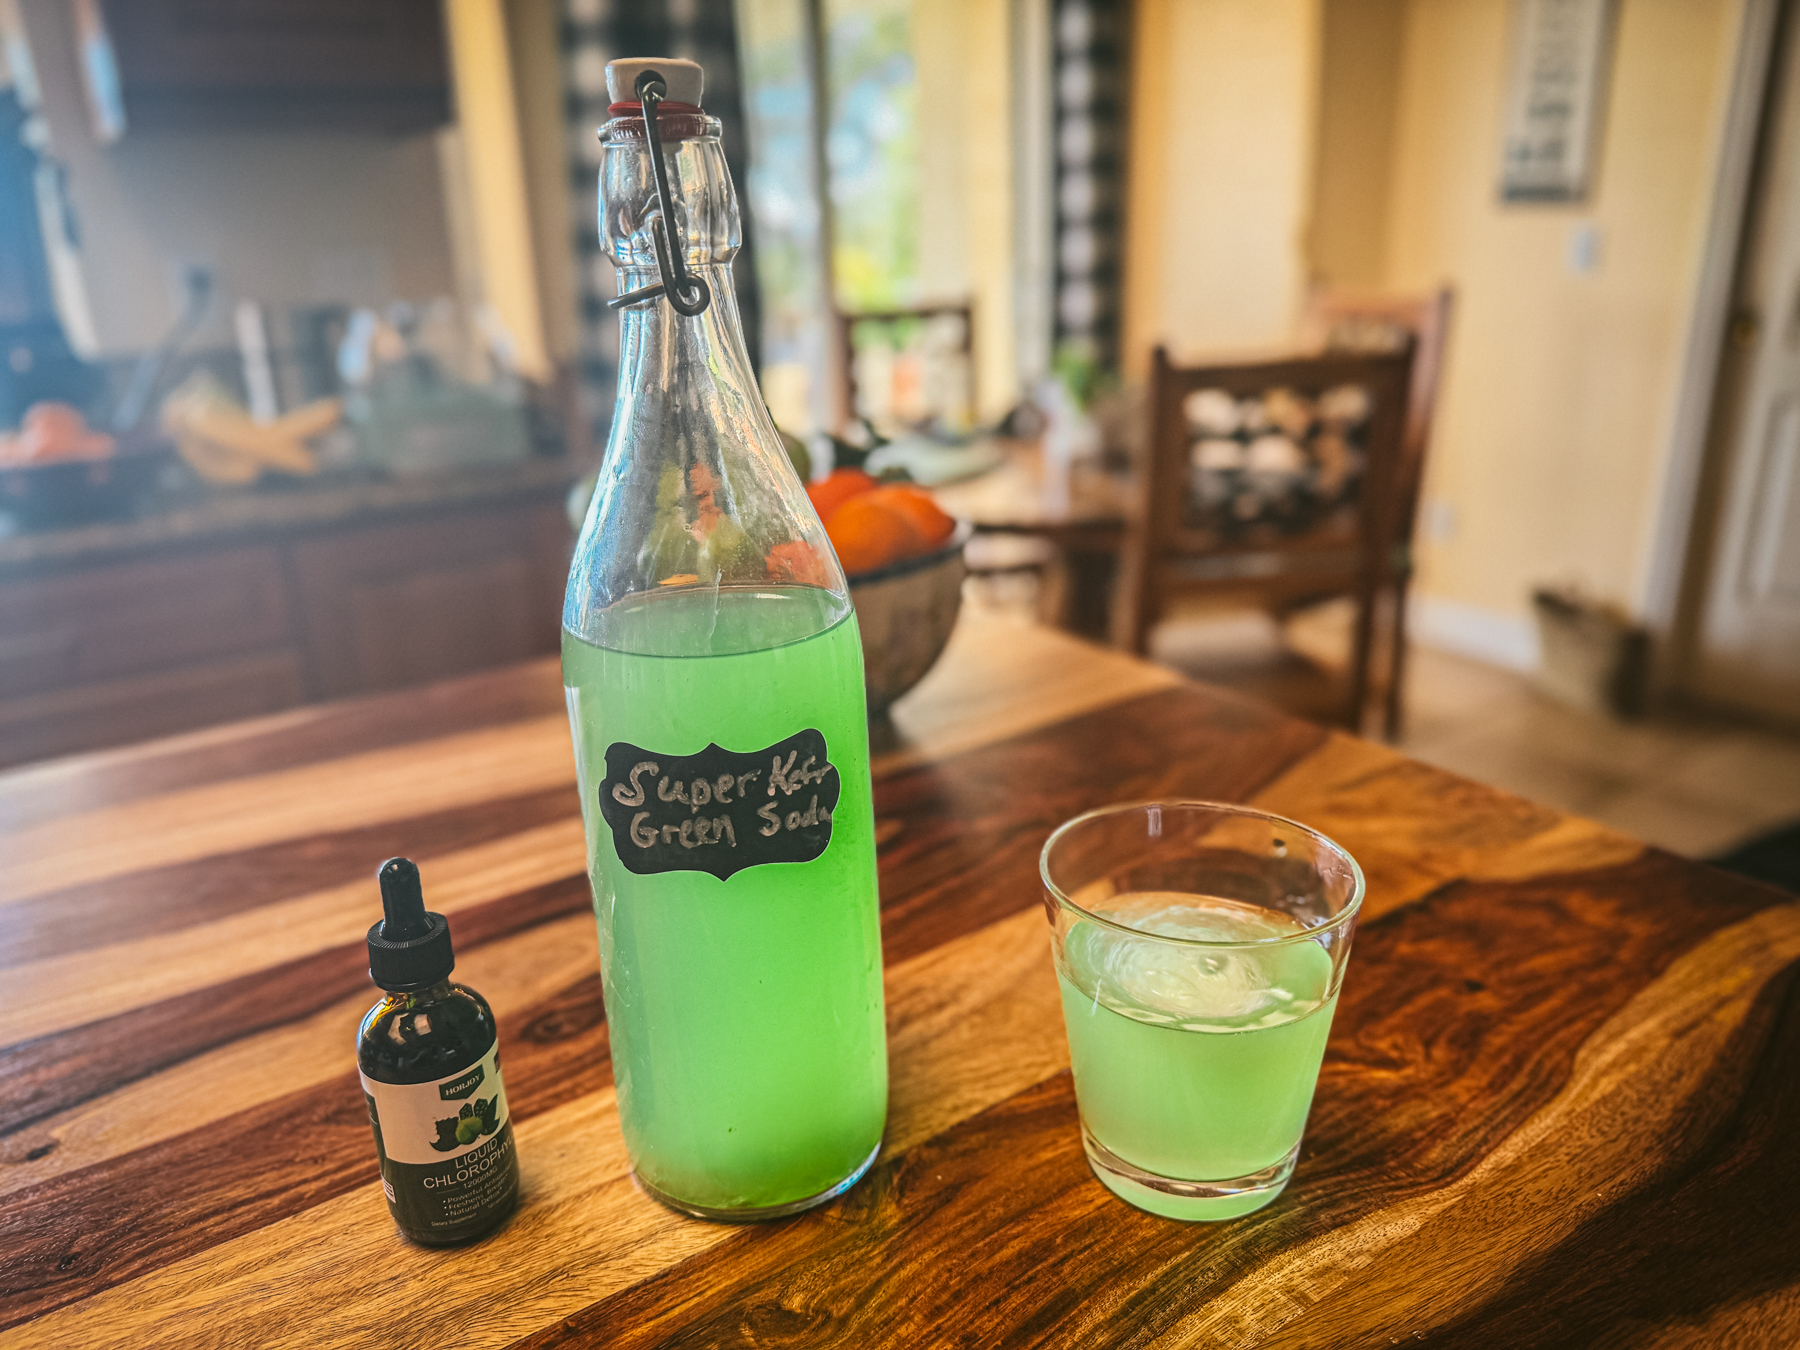 Green kefir soda